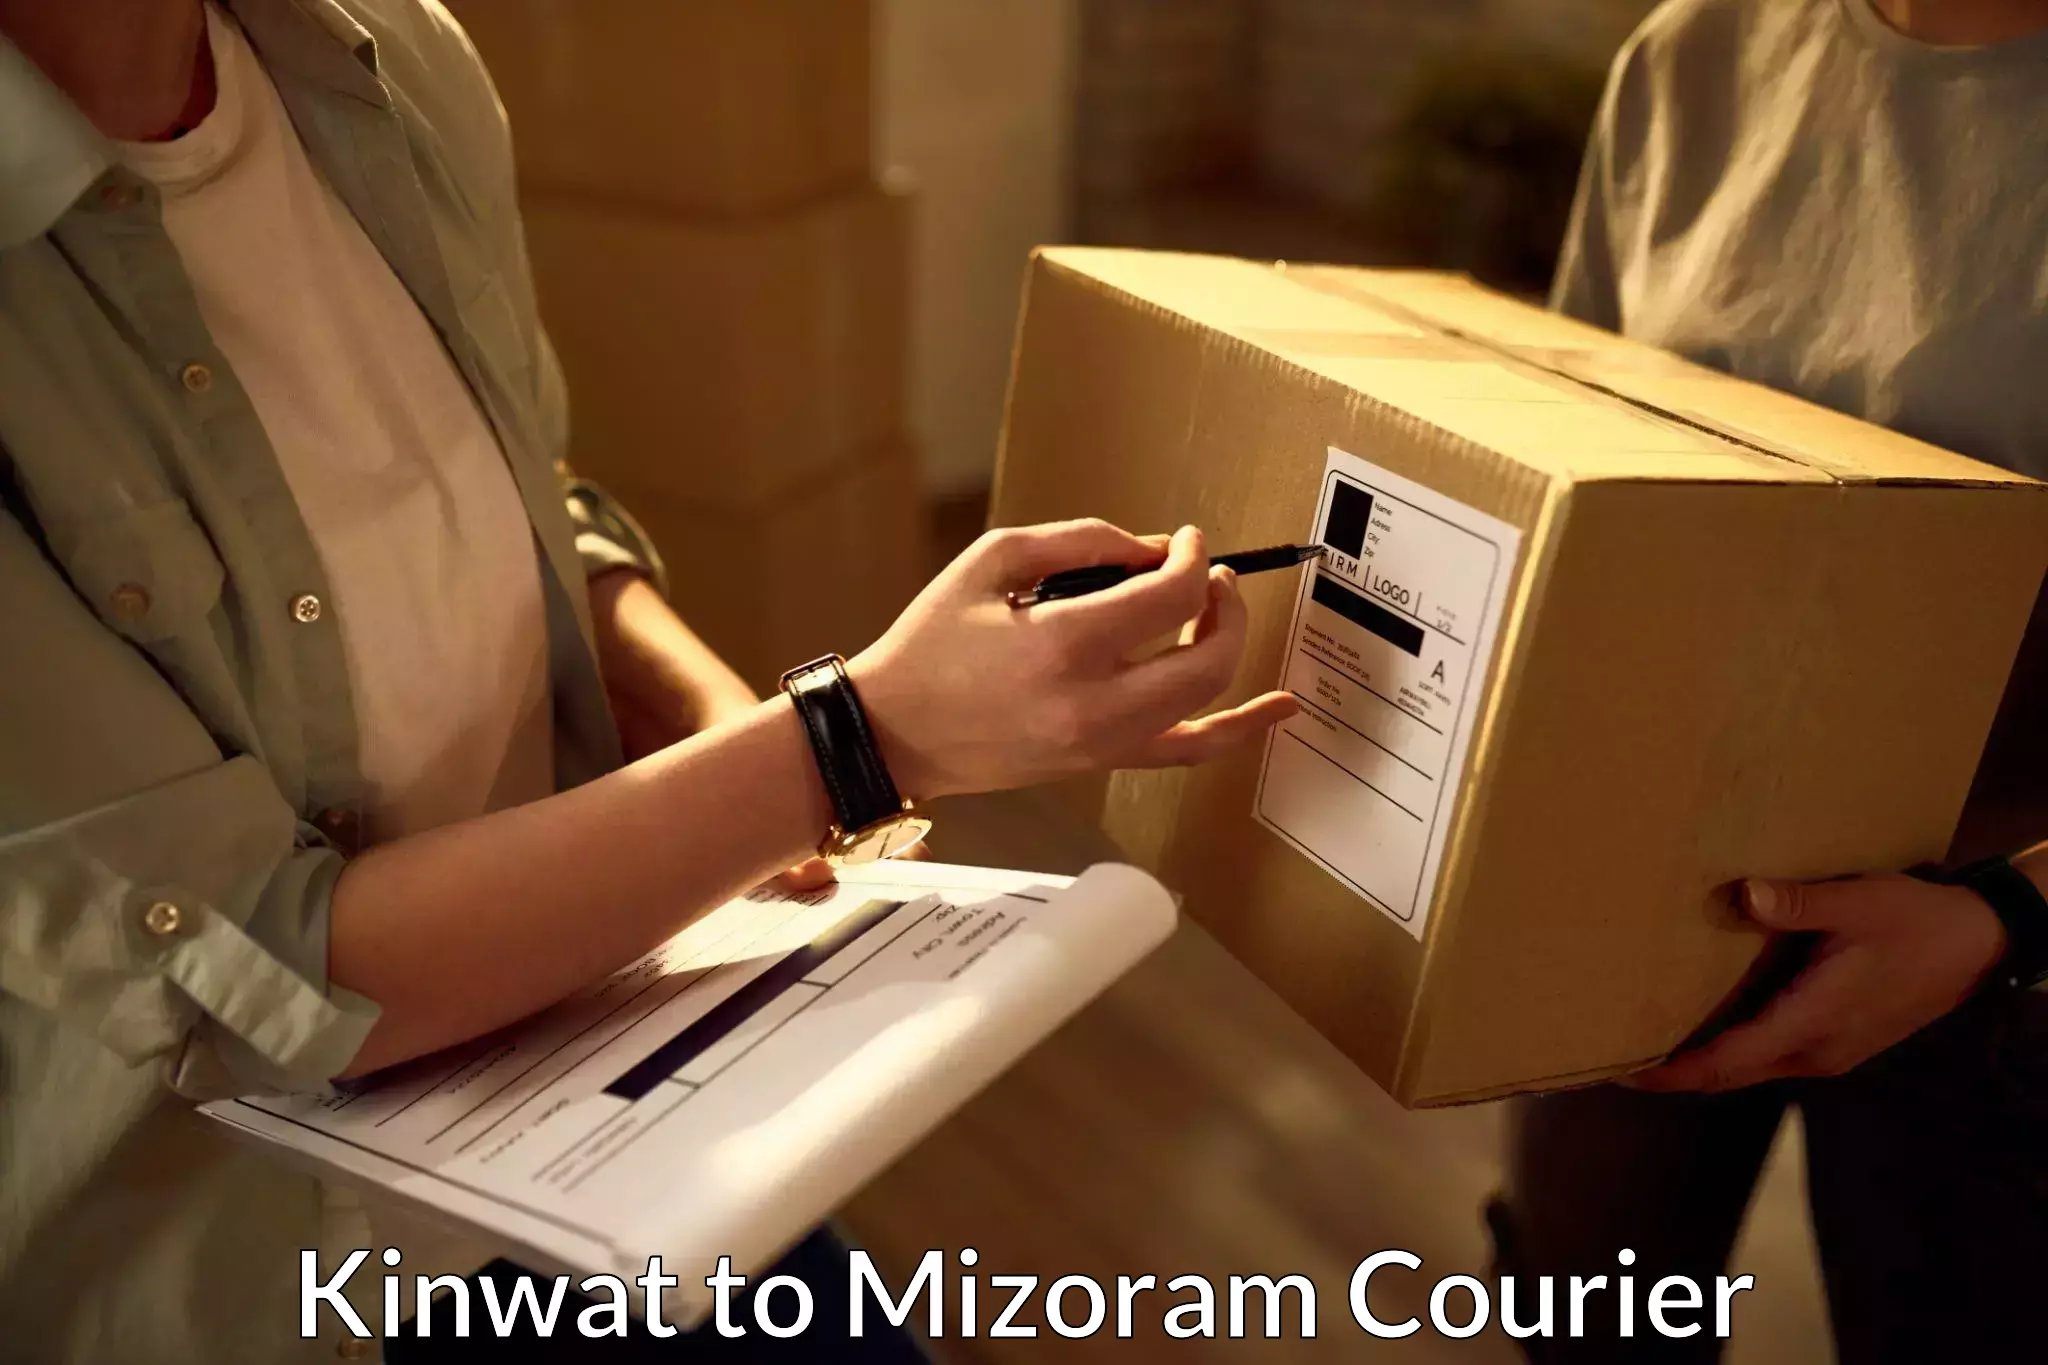 Reliable delivery network Kinwat to Kolasib